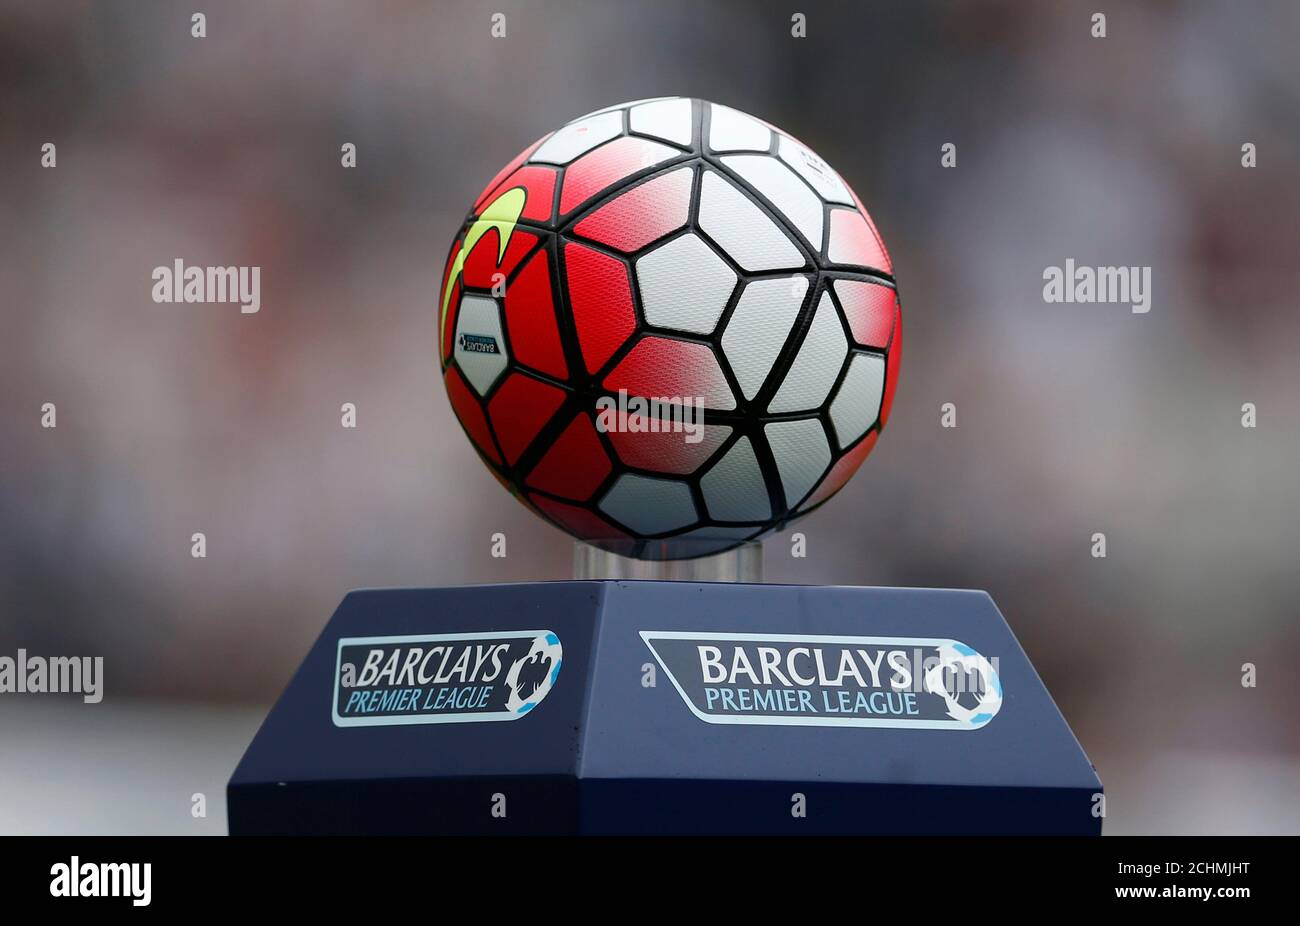 Descubrir Pacífico Arenoso Fútbol - Newcastle United v Southampton - Barclays Premier League - St  James' Park - 15/16 - 9/8/15 Vista general de la pelota del día del partido  Imágenes de acción vía Reuters /